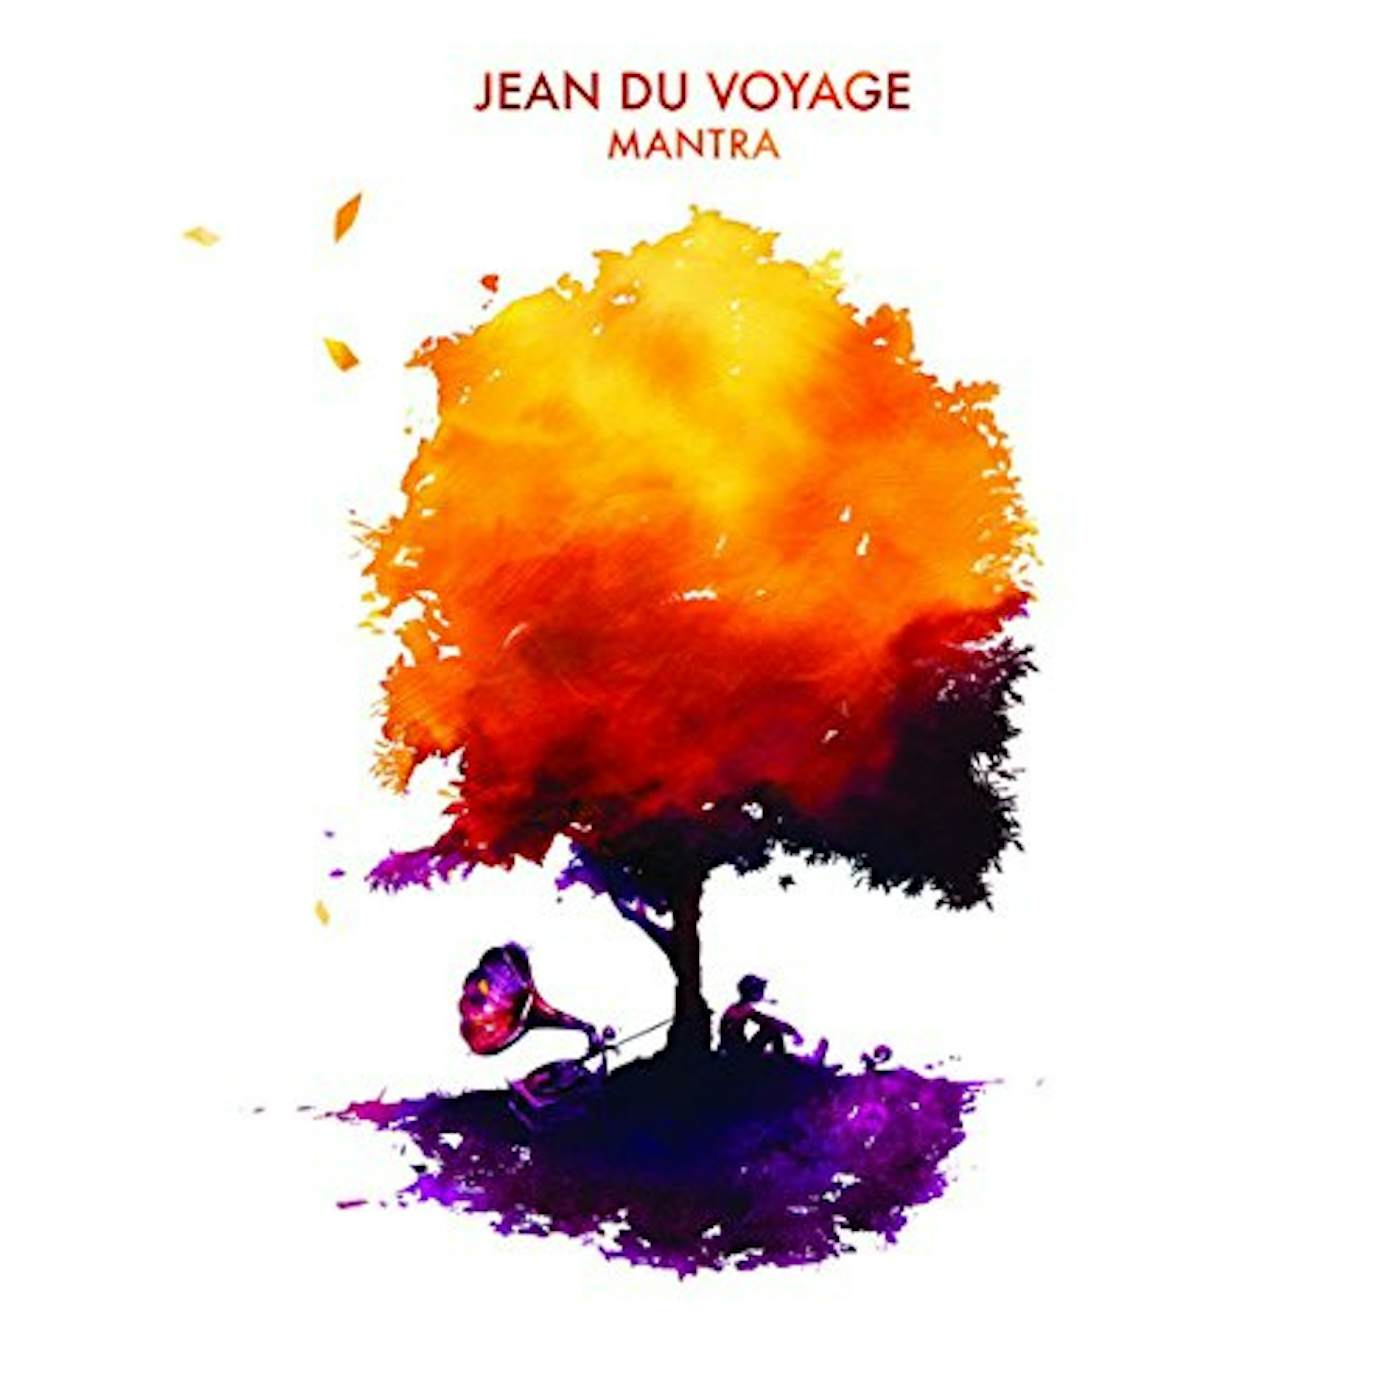 Jean du Voyage Mantra Vinyl Record